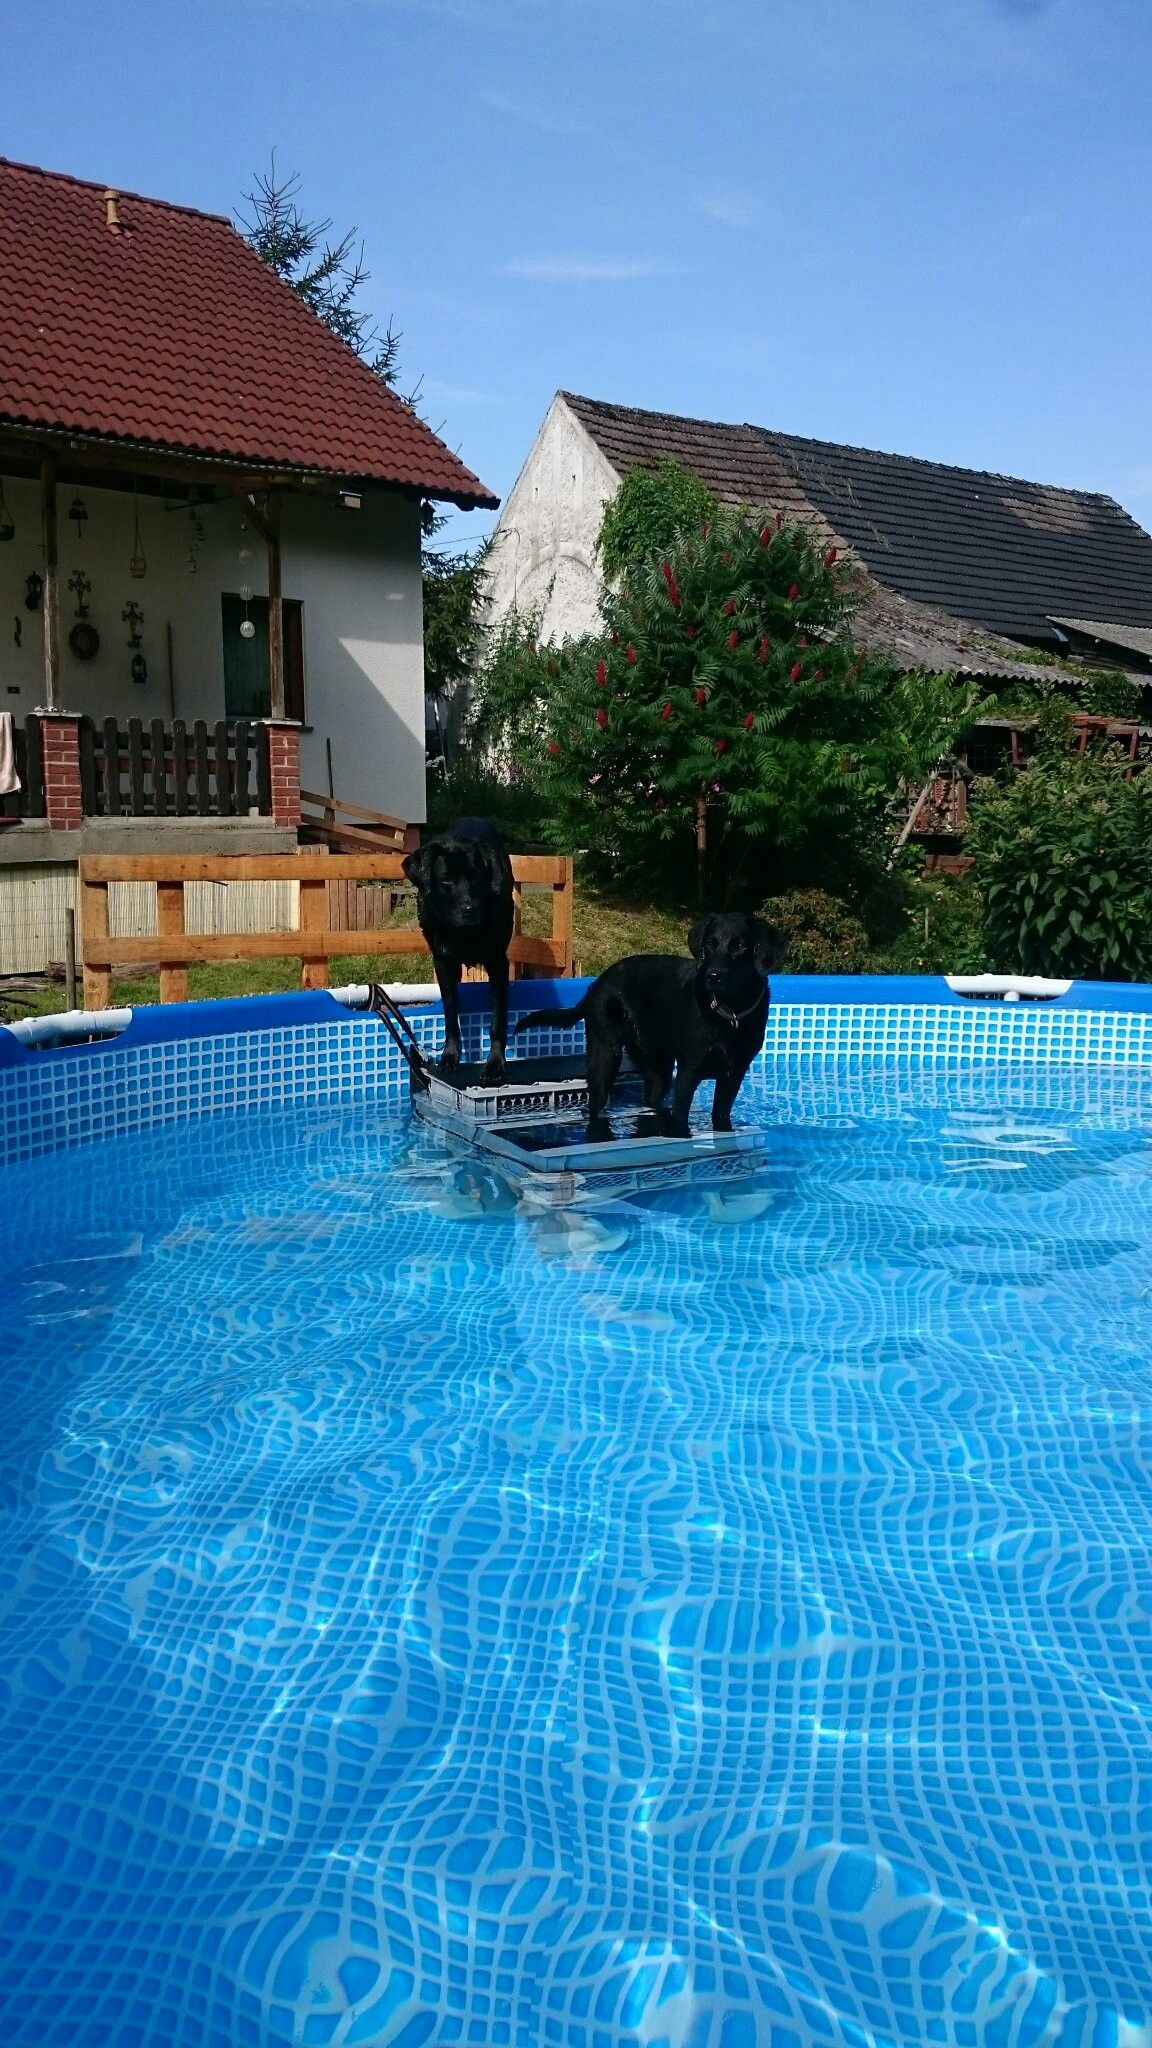 DIY Dog Ramp For Above Ground Pool
 DIY Swimming Pool Dog stairs Dog ramp